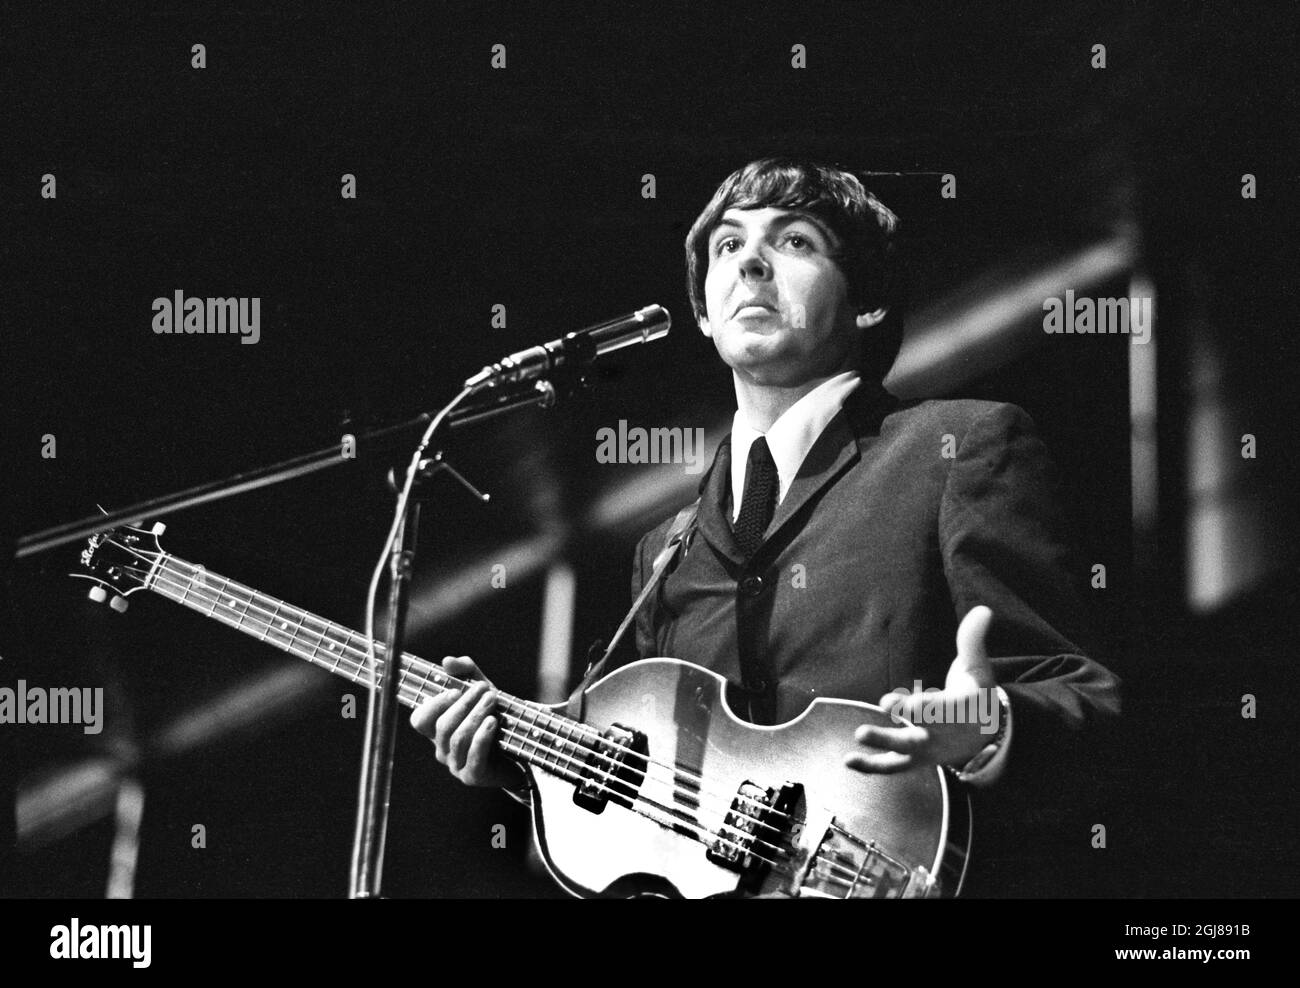 STOCKHOLM 1964-07-28 *POUR VOS DOSSIERS* Paul McCartney et les Beatles sont vus pendant un concert au stade de glace de Johanneshov à Stockholm, Suède, 28 juillet 1964 Foto: Folke Hellberg / DN / TT / Kod: 23 **OUT SWEDEN OUT** Banque D'Images